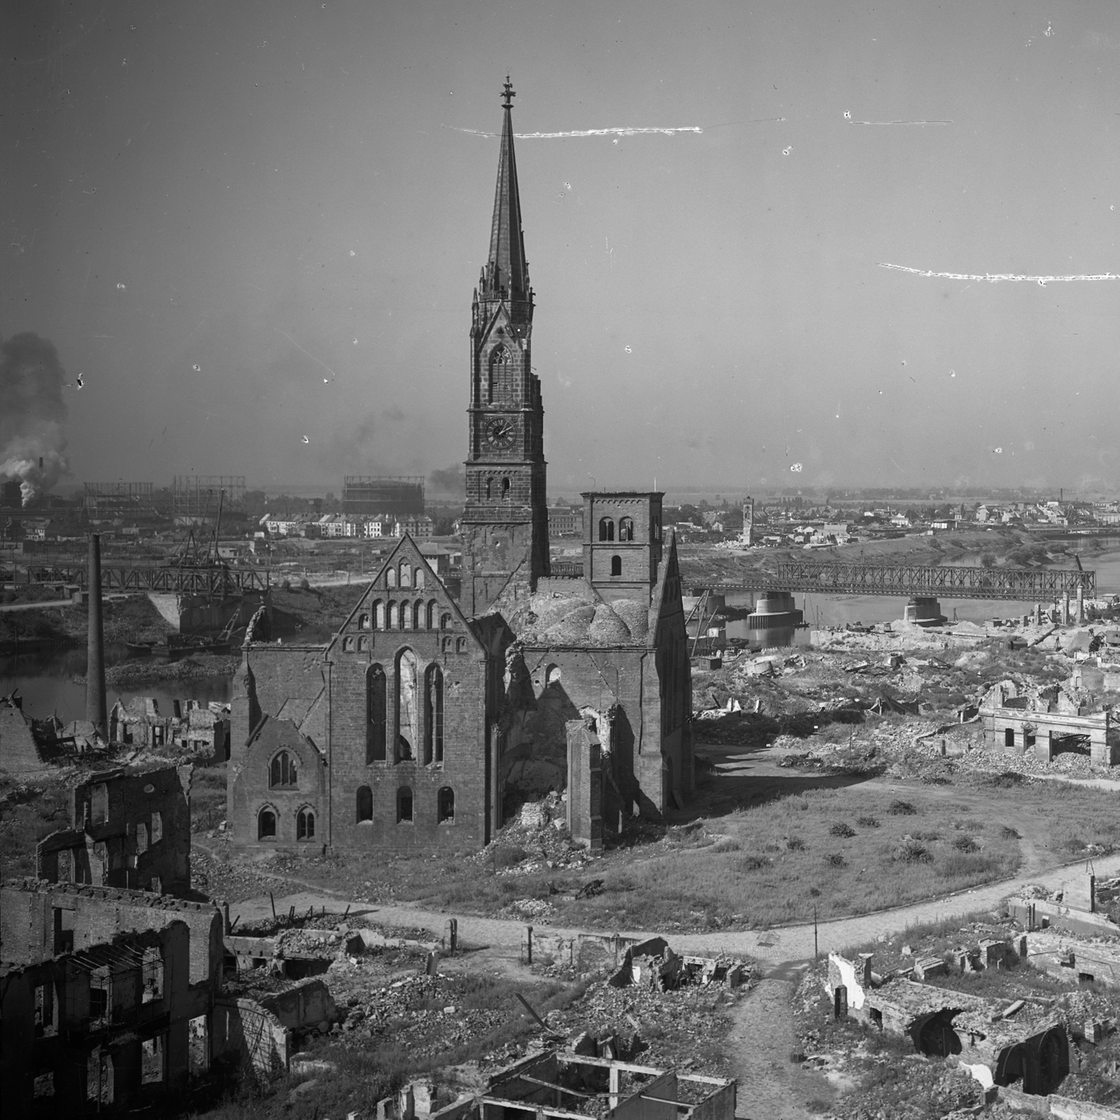 die zerstörte Stephani-Kirche in Bremen